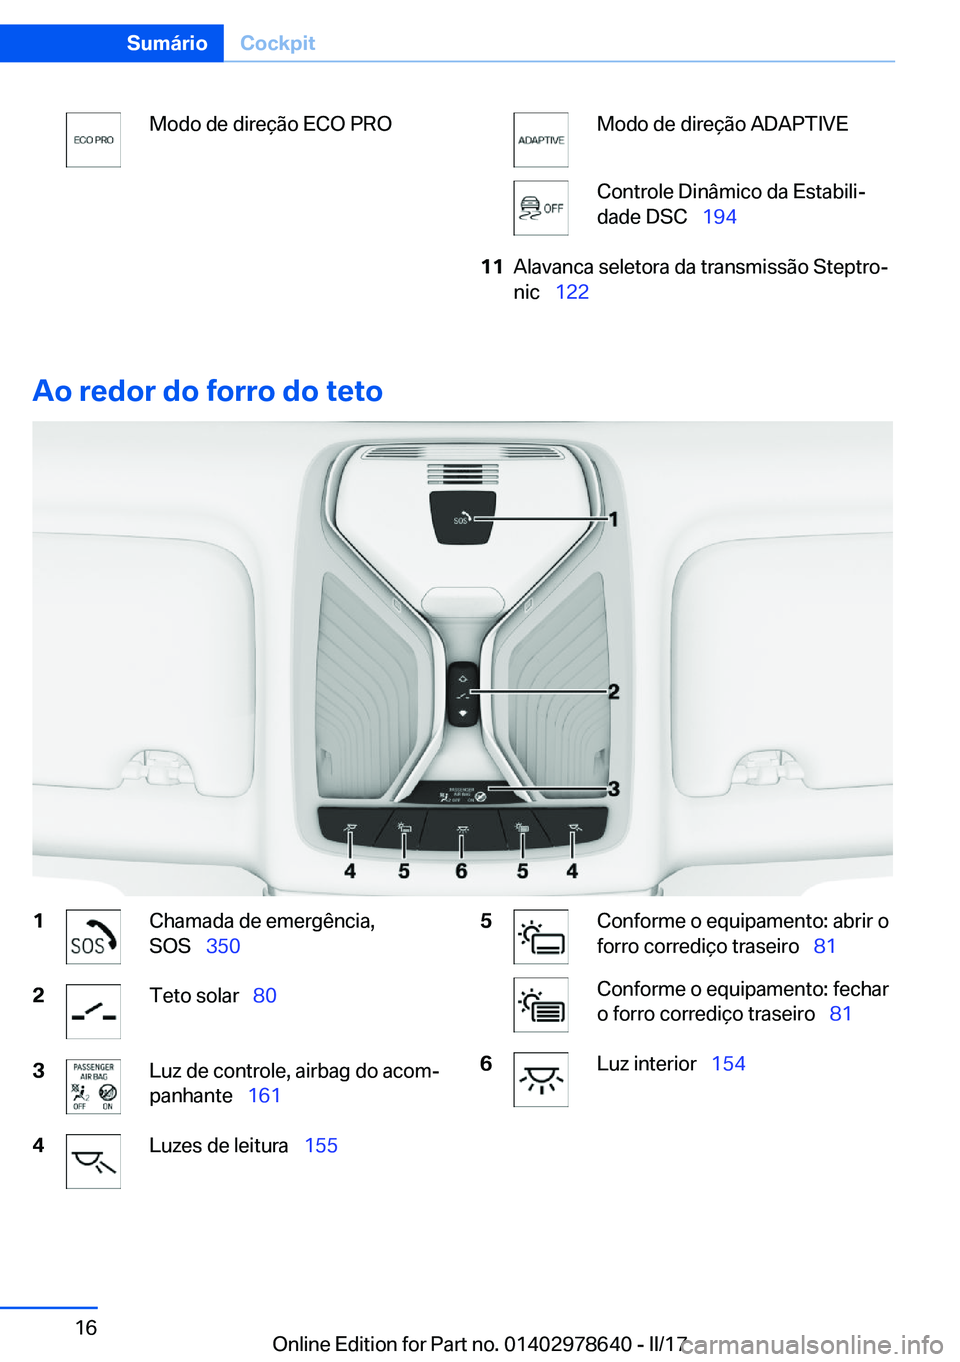 BMW 7 SERIES 2018  Manual do condutor (in Portuguese) �M�o�d�o� �d�e� �d�i�r�e�ç�ã�o� �E�C�O� �P�R�O�M�o�d�o� �d�e� �d�i�r�e�ç�ã�o� �A�D�A�P�T�I�V�E�C�o�n�t�r�o�l�e� �D�i�n�â�m�i�c�o� �d�a� �E�s�t�a�b�i�l�iª
�d�a�d�e� �D�S�C\_ �1�9�4�1�1�A�l�a�v